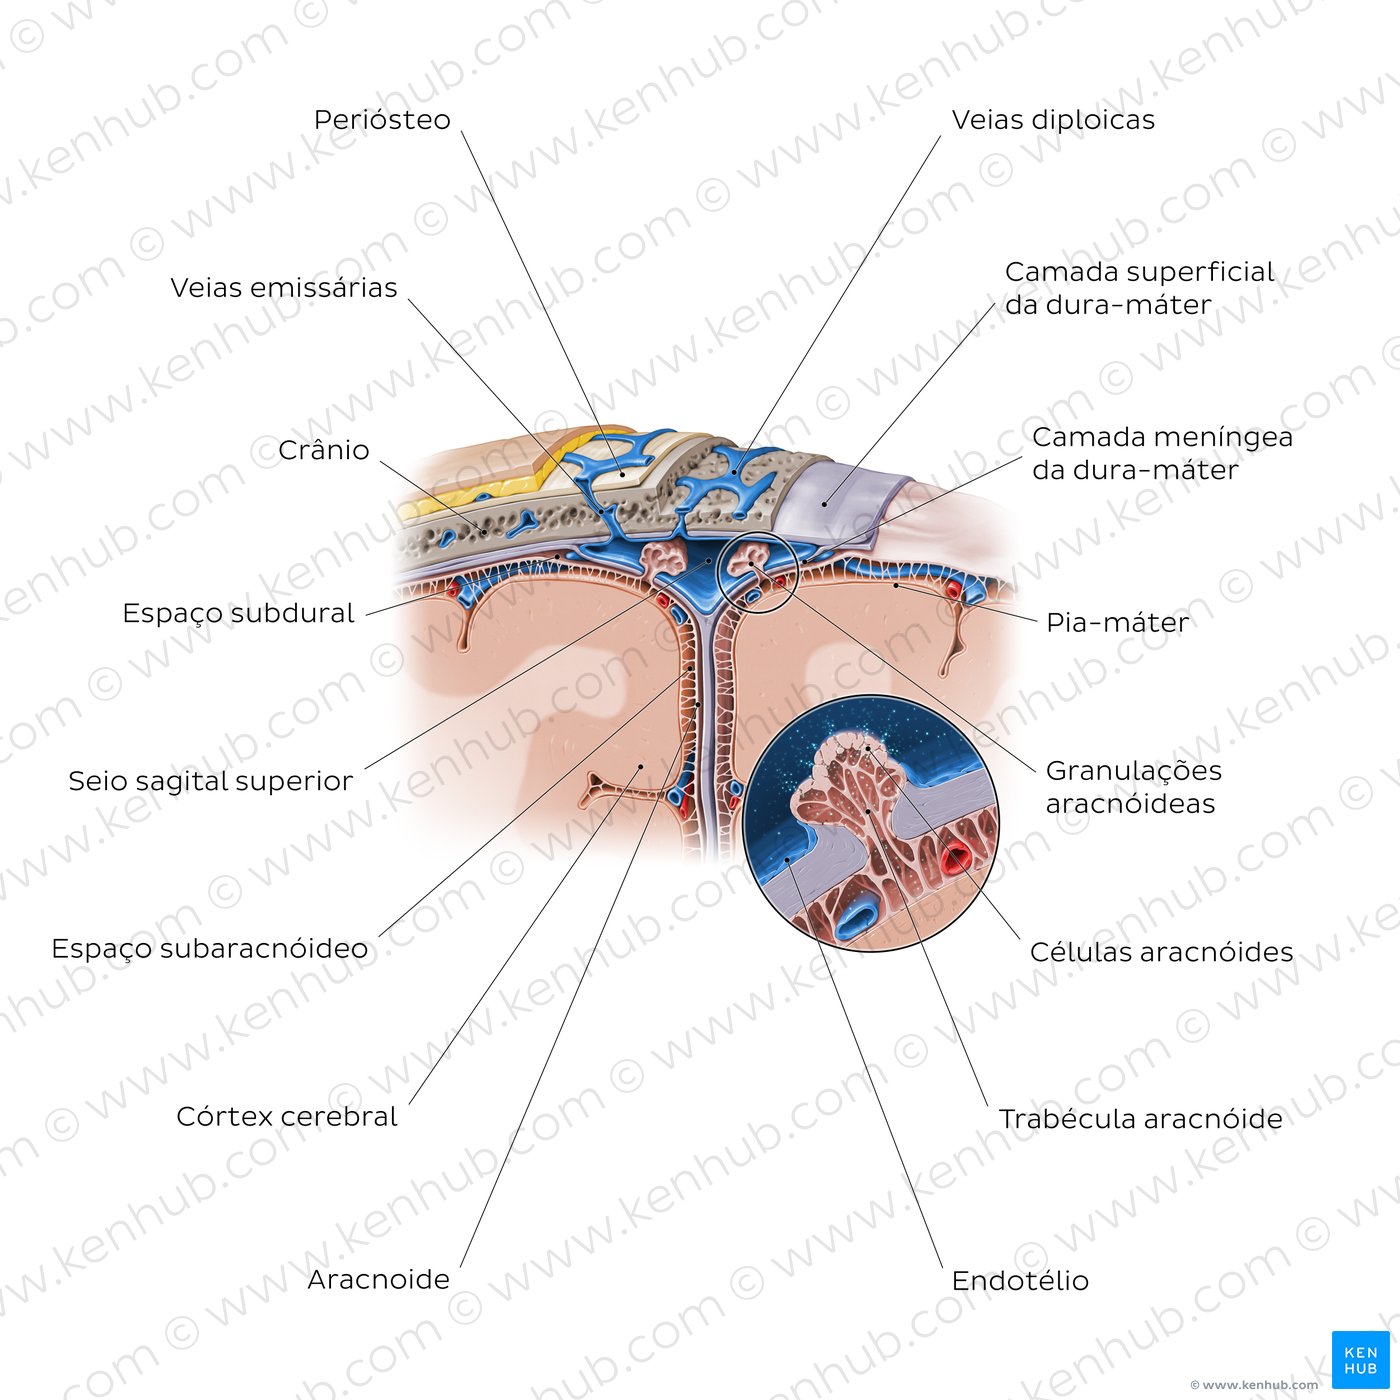 Diagrama das meninges cerebrais